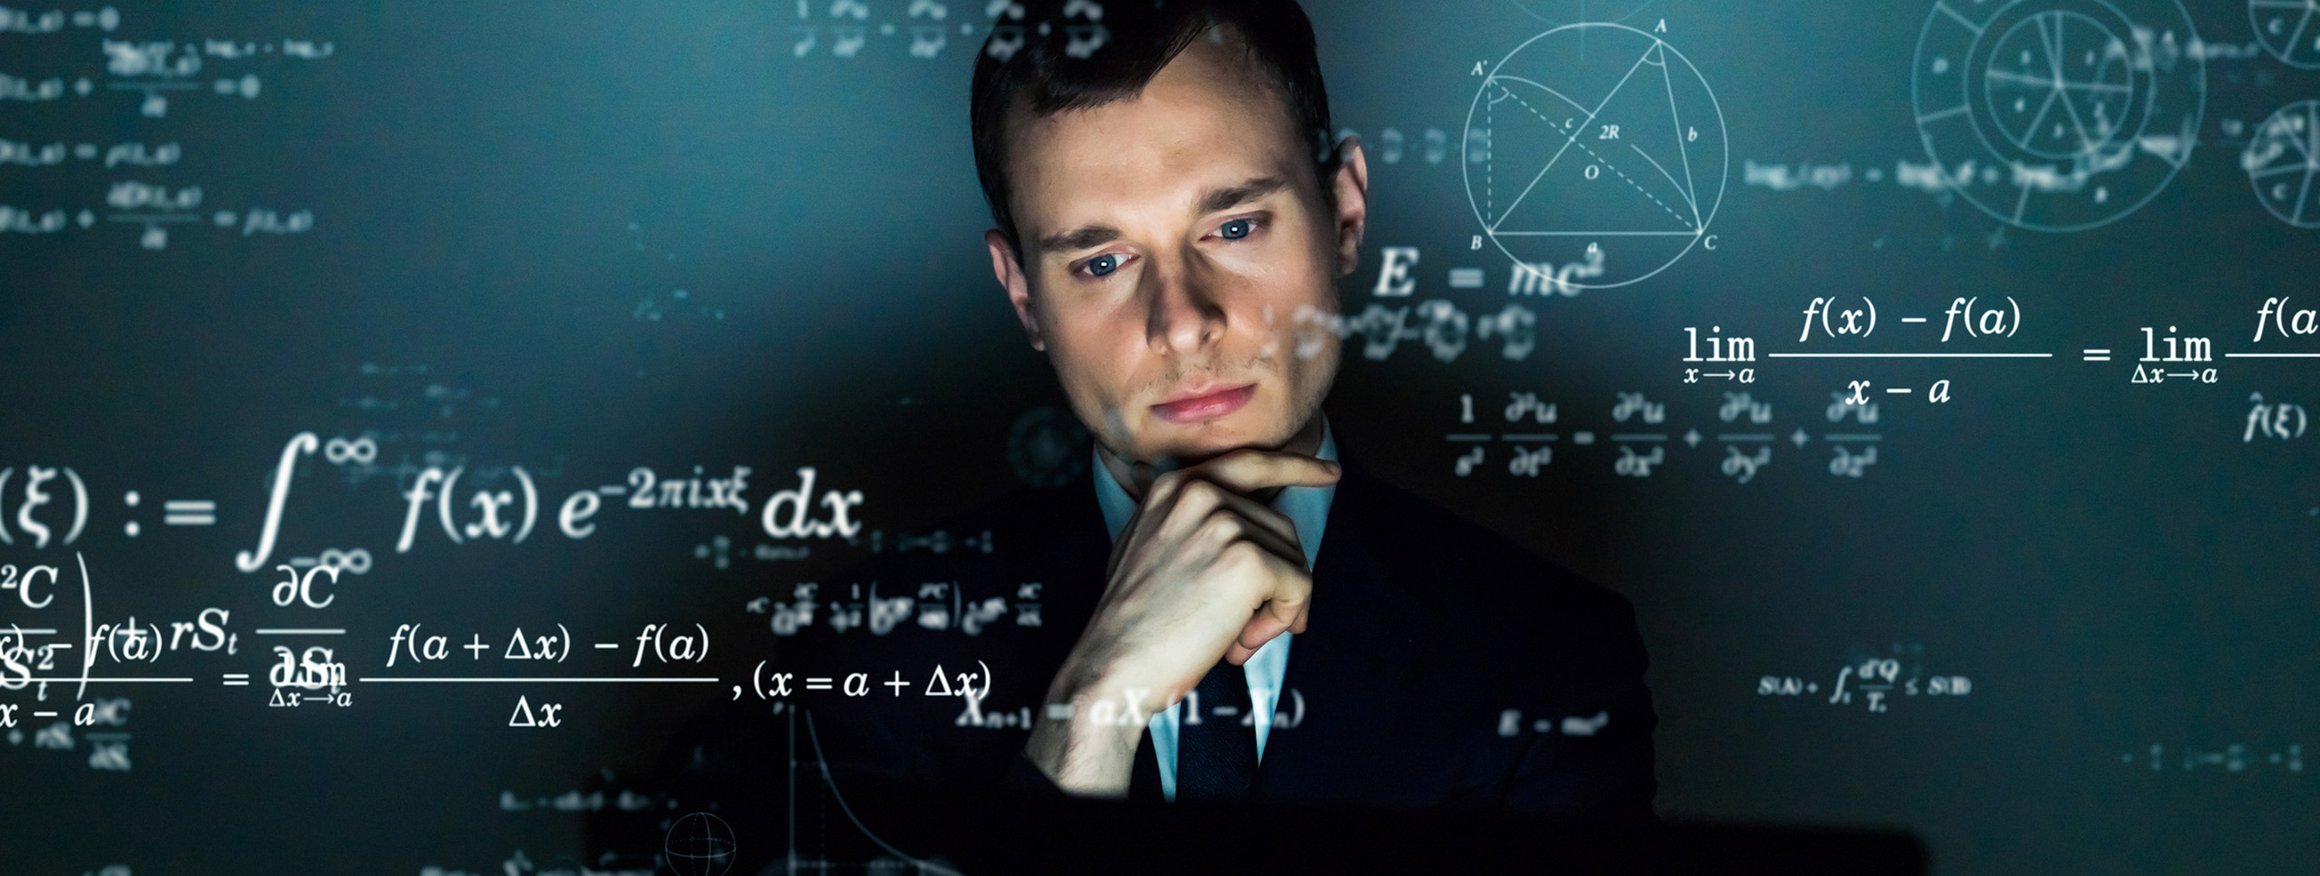 Ein junger Mann im dunklen Anzug denkt über mathematische Formeln nach